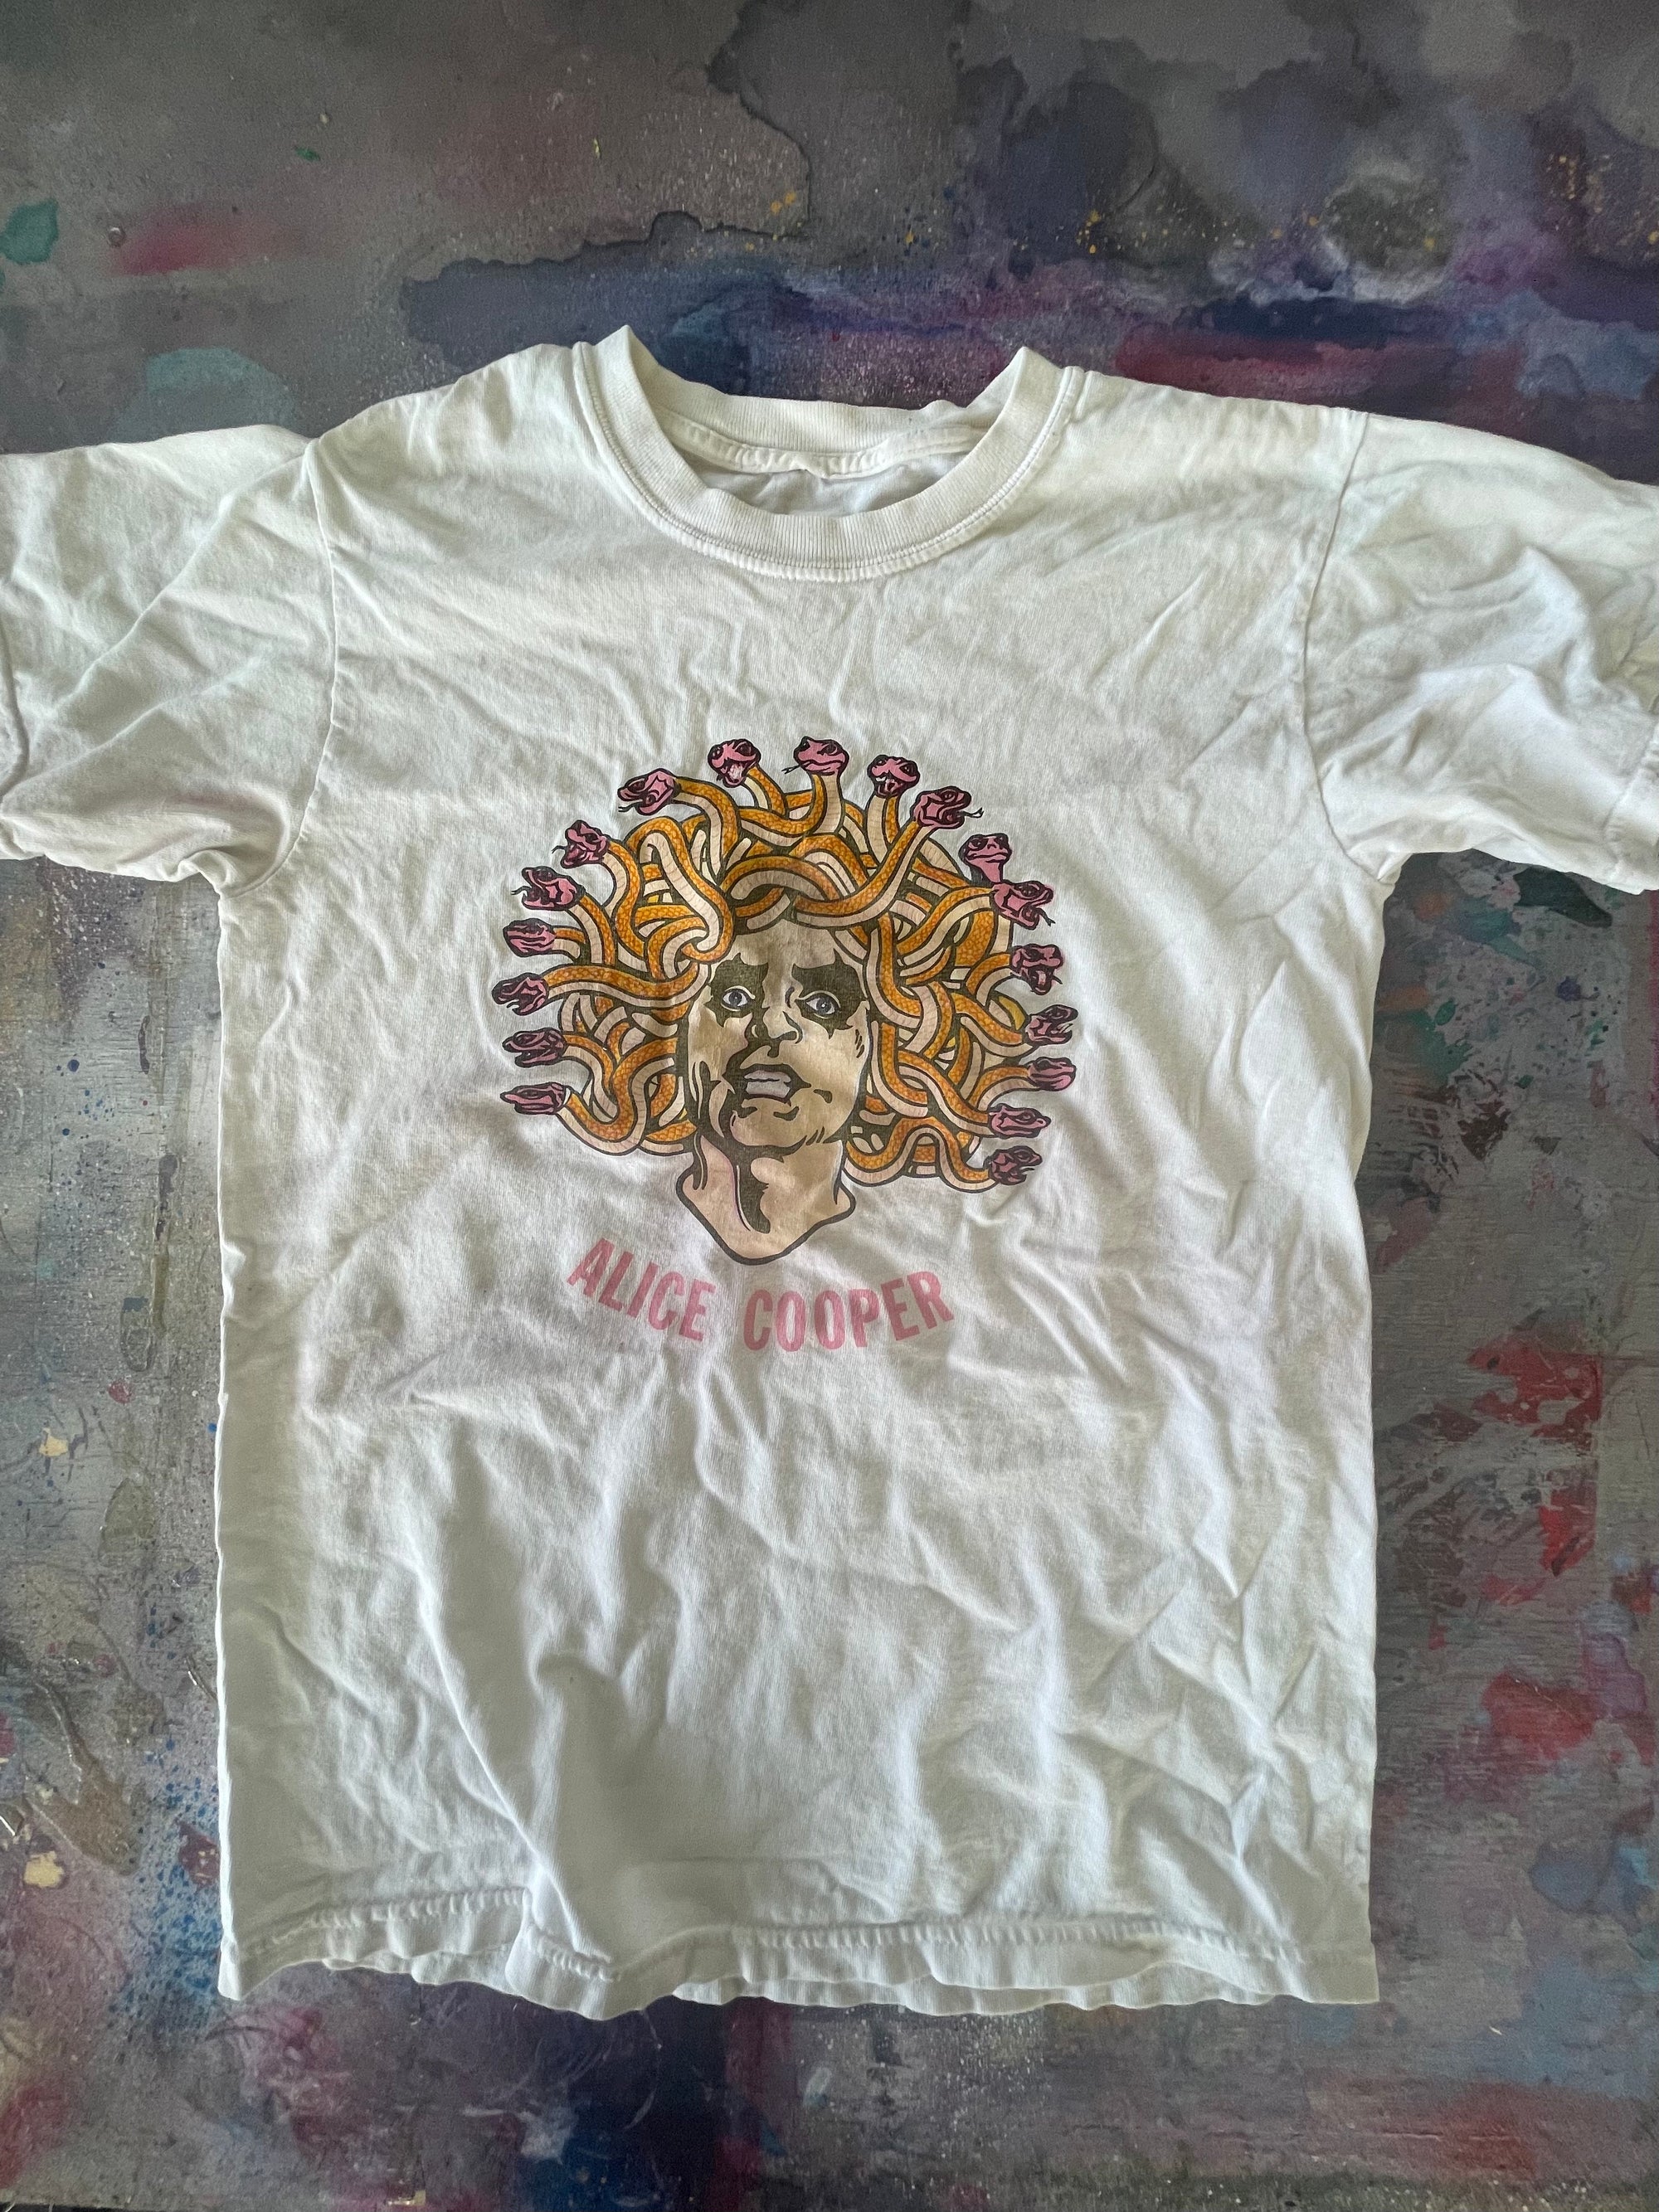 Alice Cooper "Medusa" T-Shirt